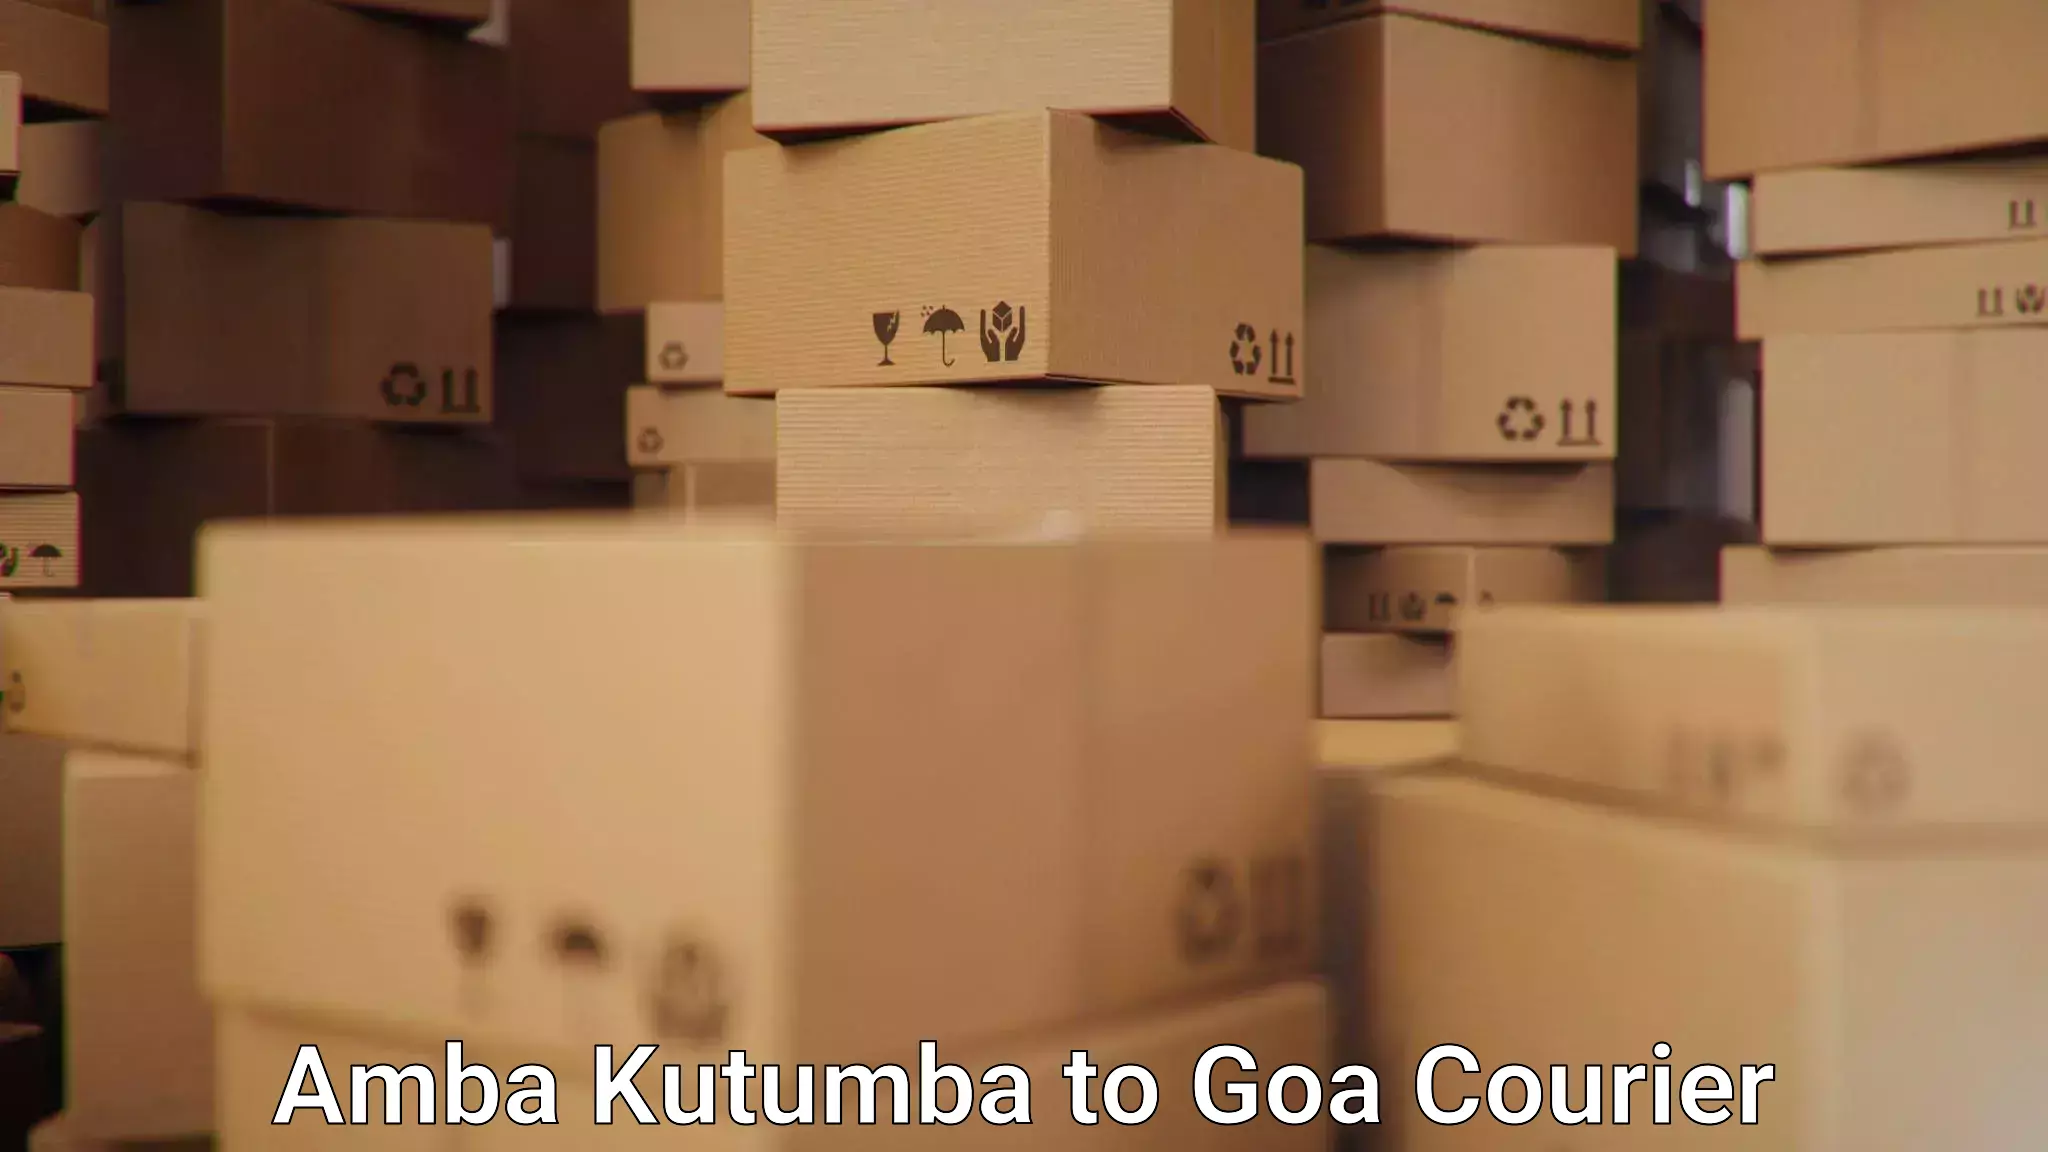 Global logistics network Amba Kutumba to South Goa